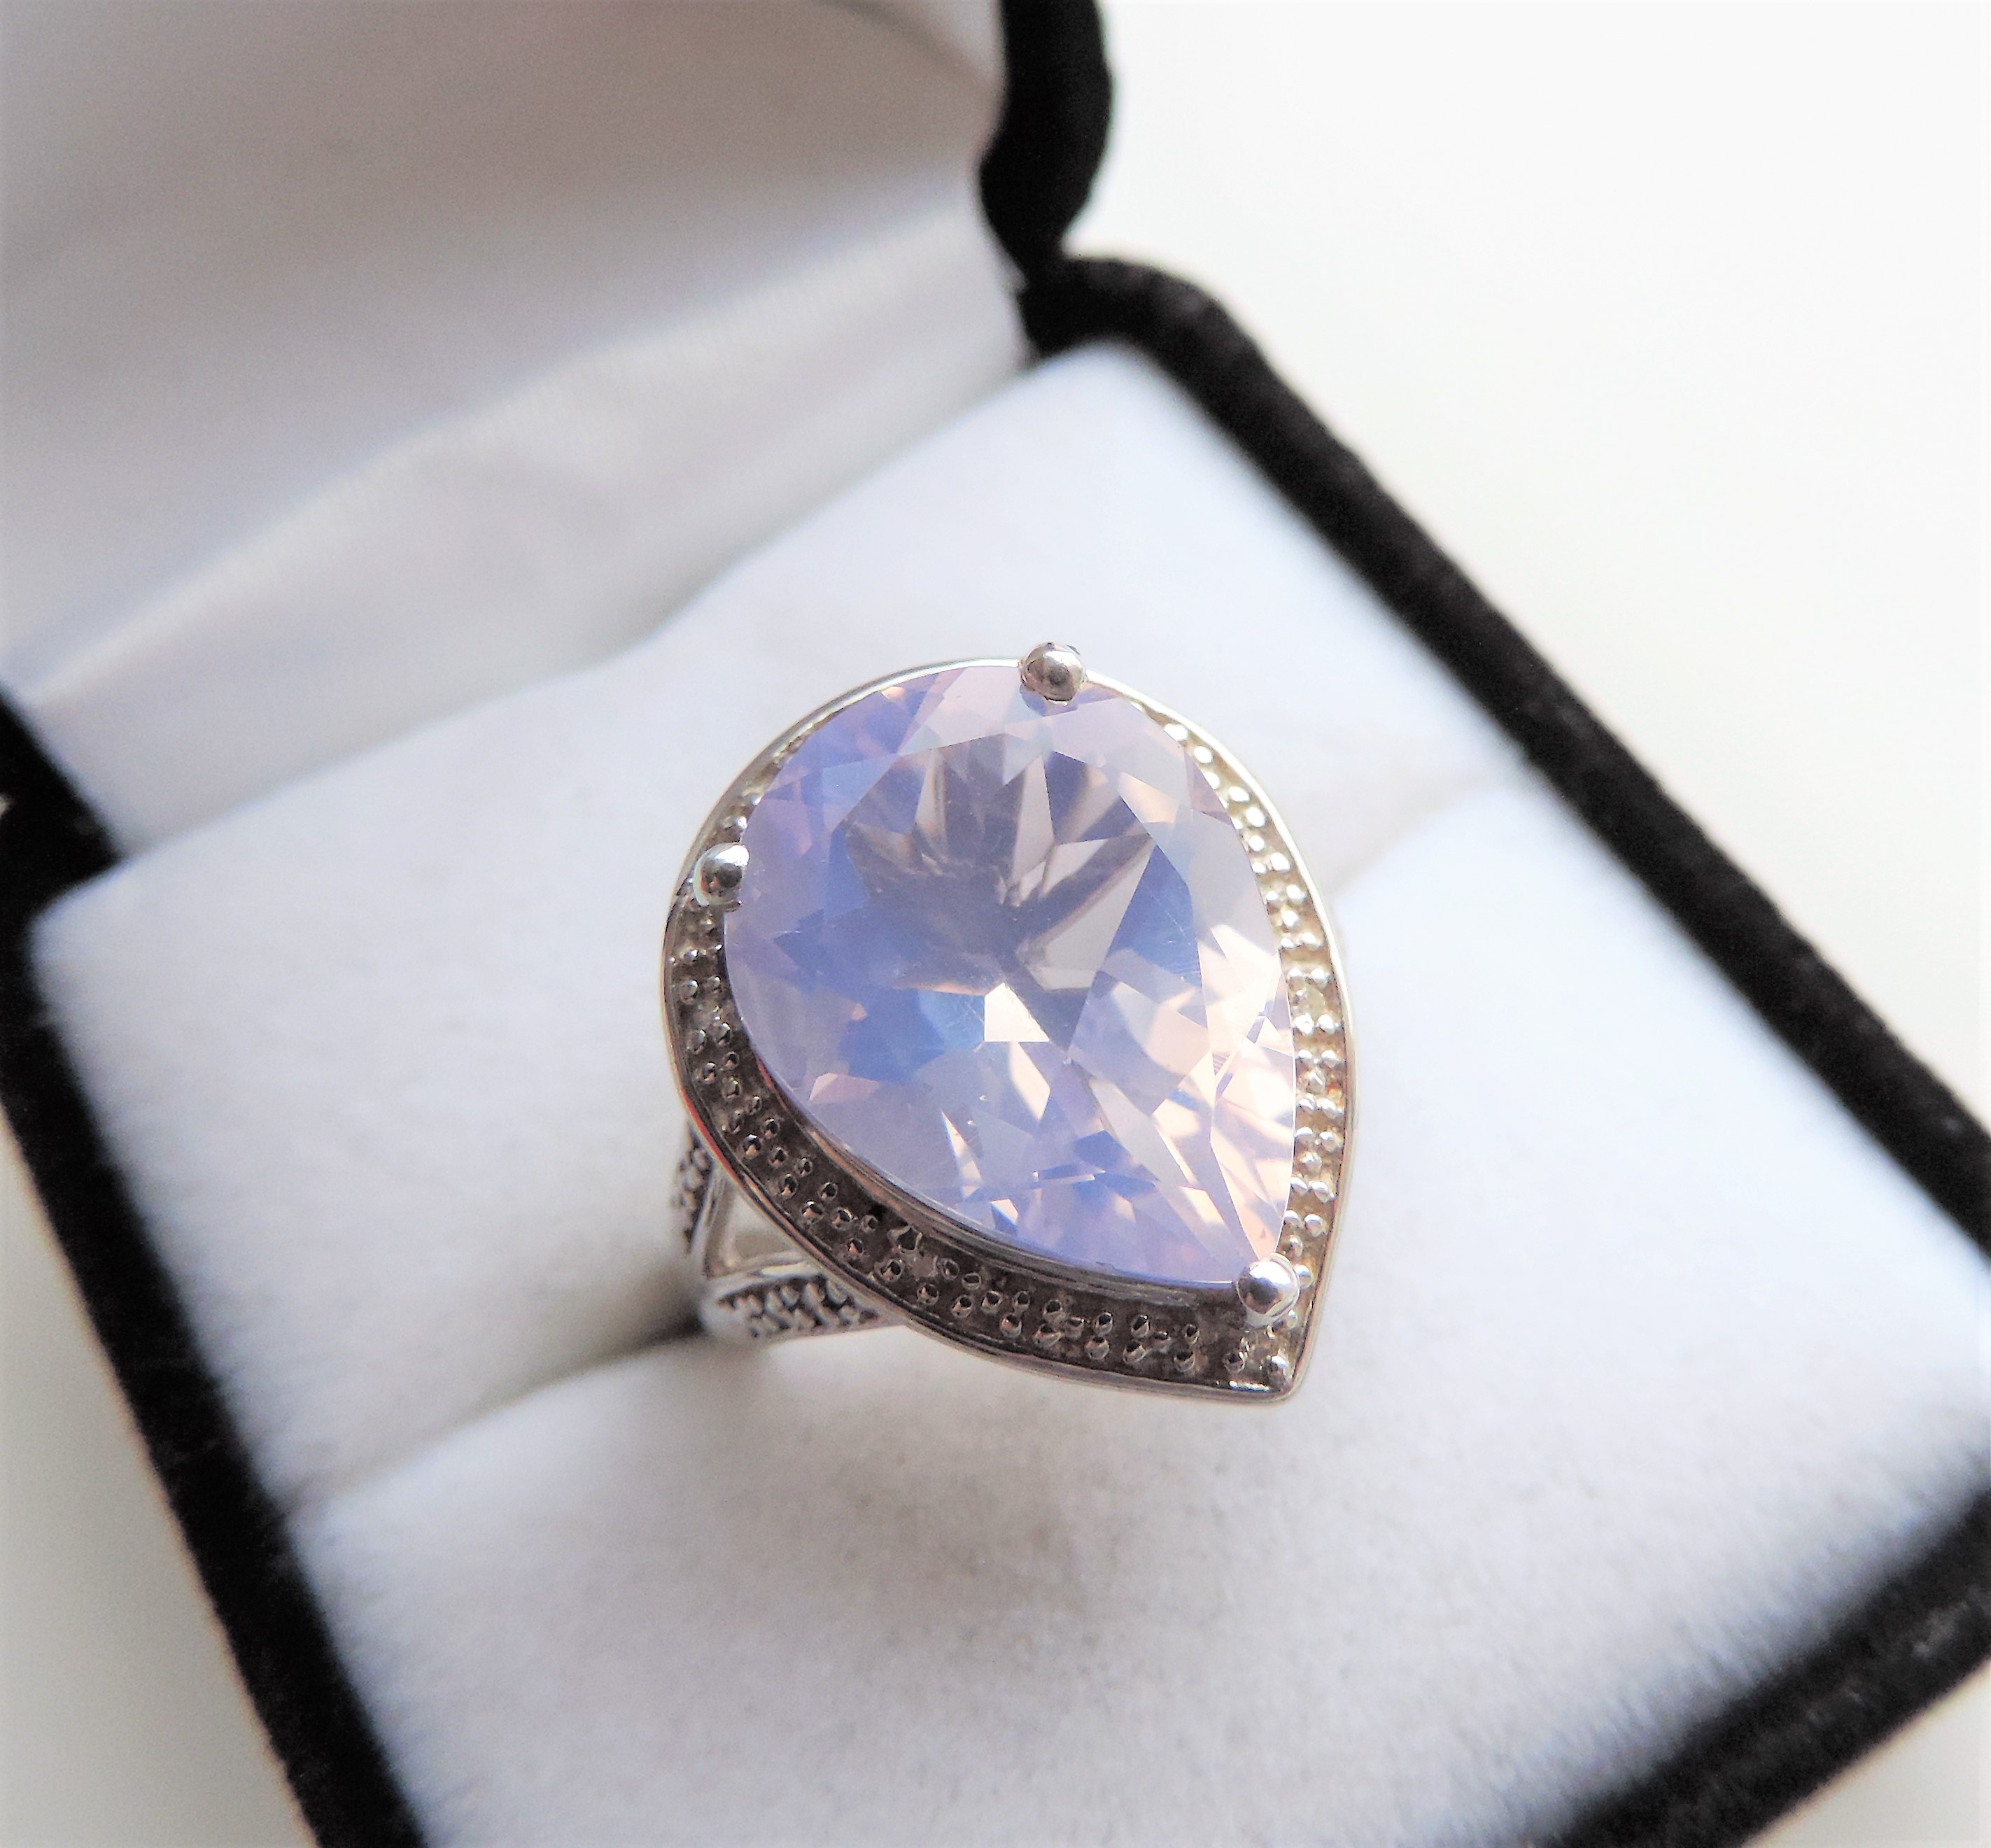 7 carat Natural Lavender Quartz Ring - Image 5 of 5